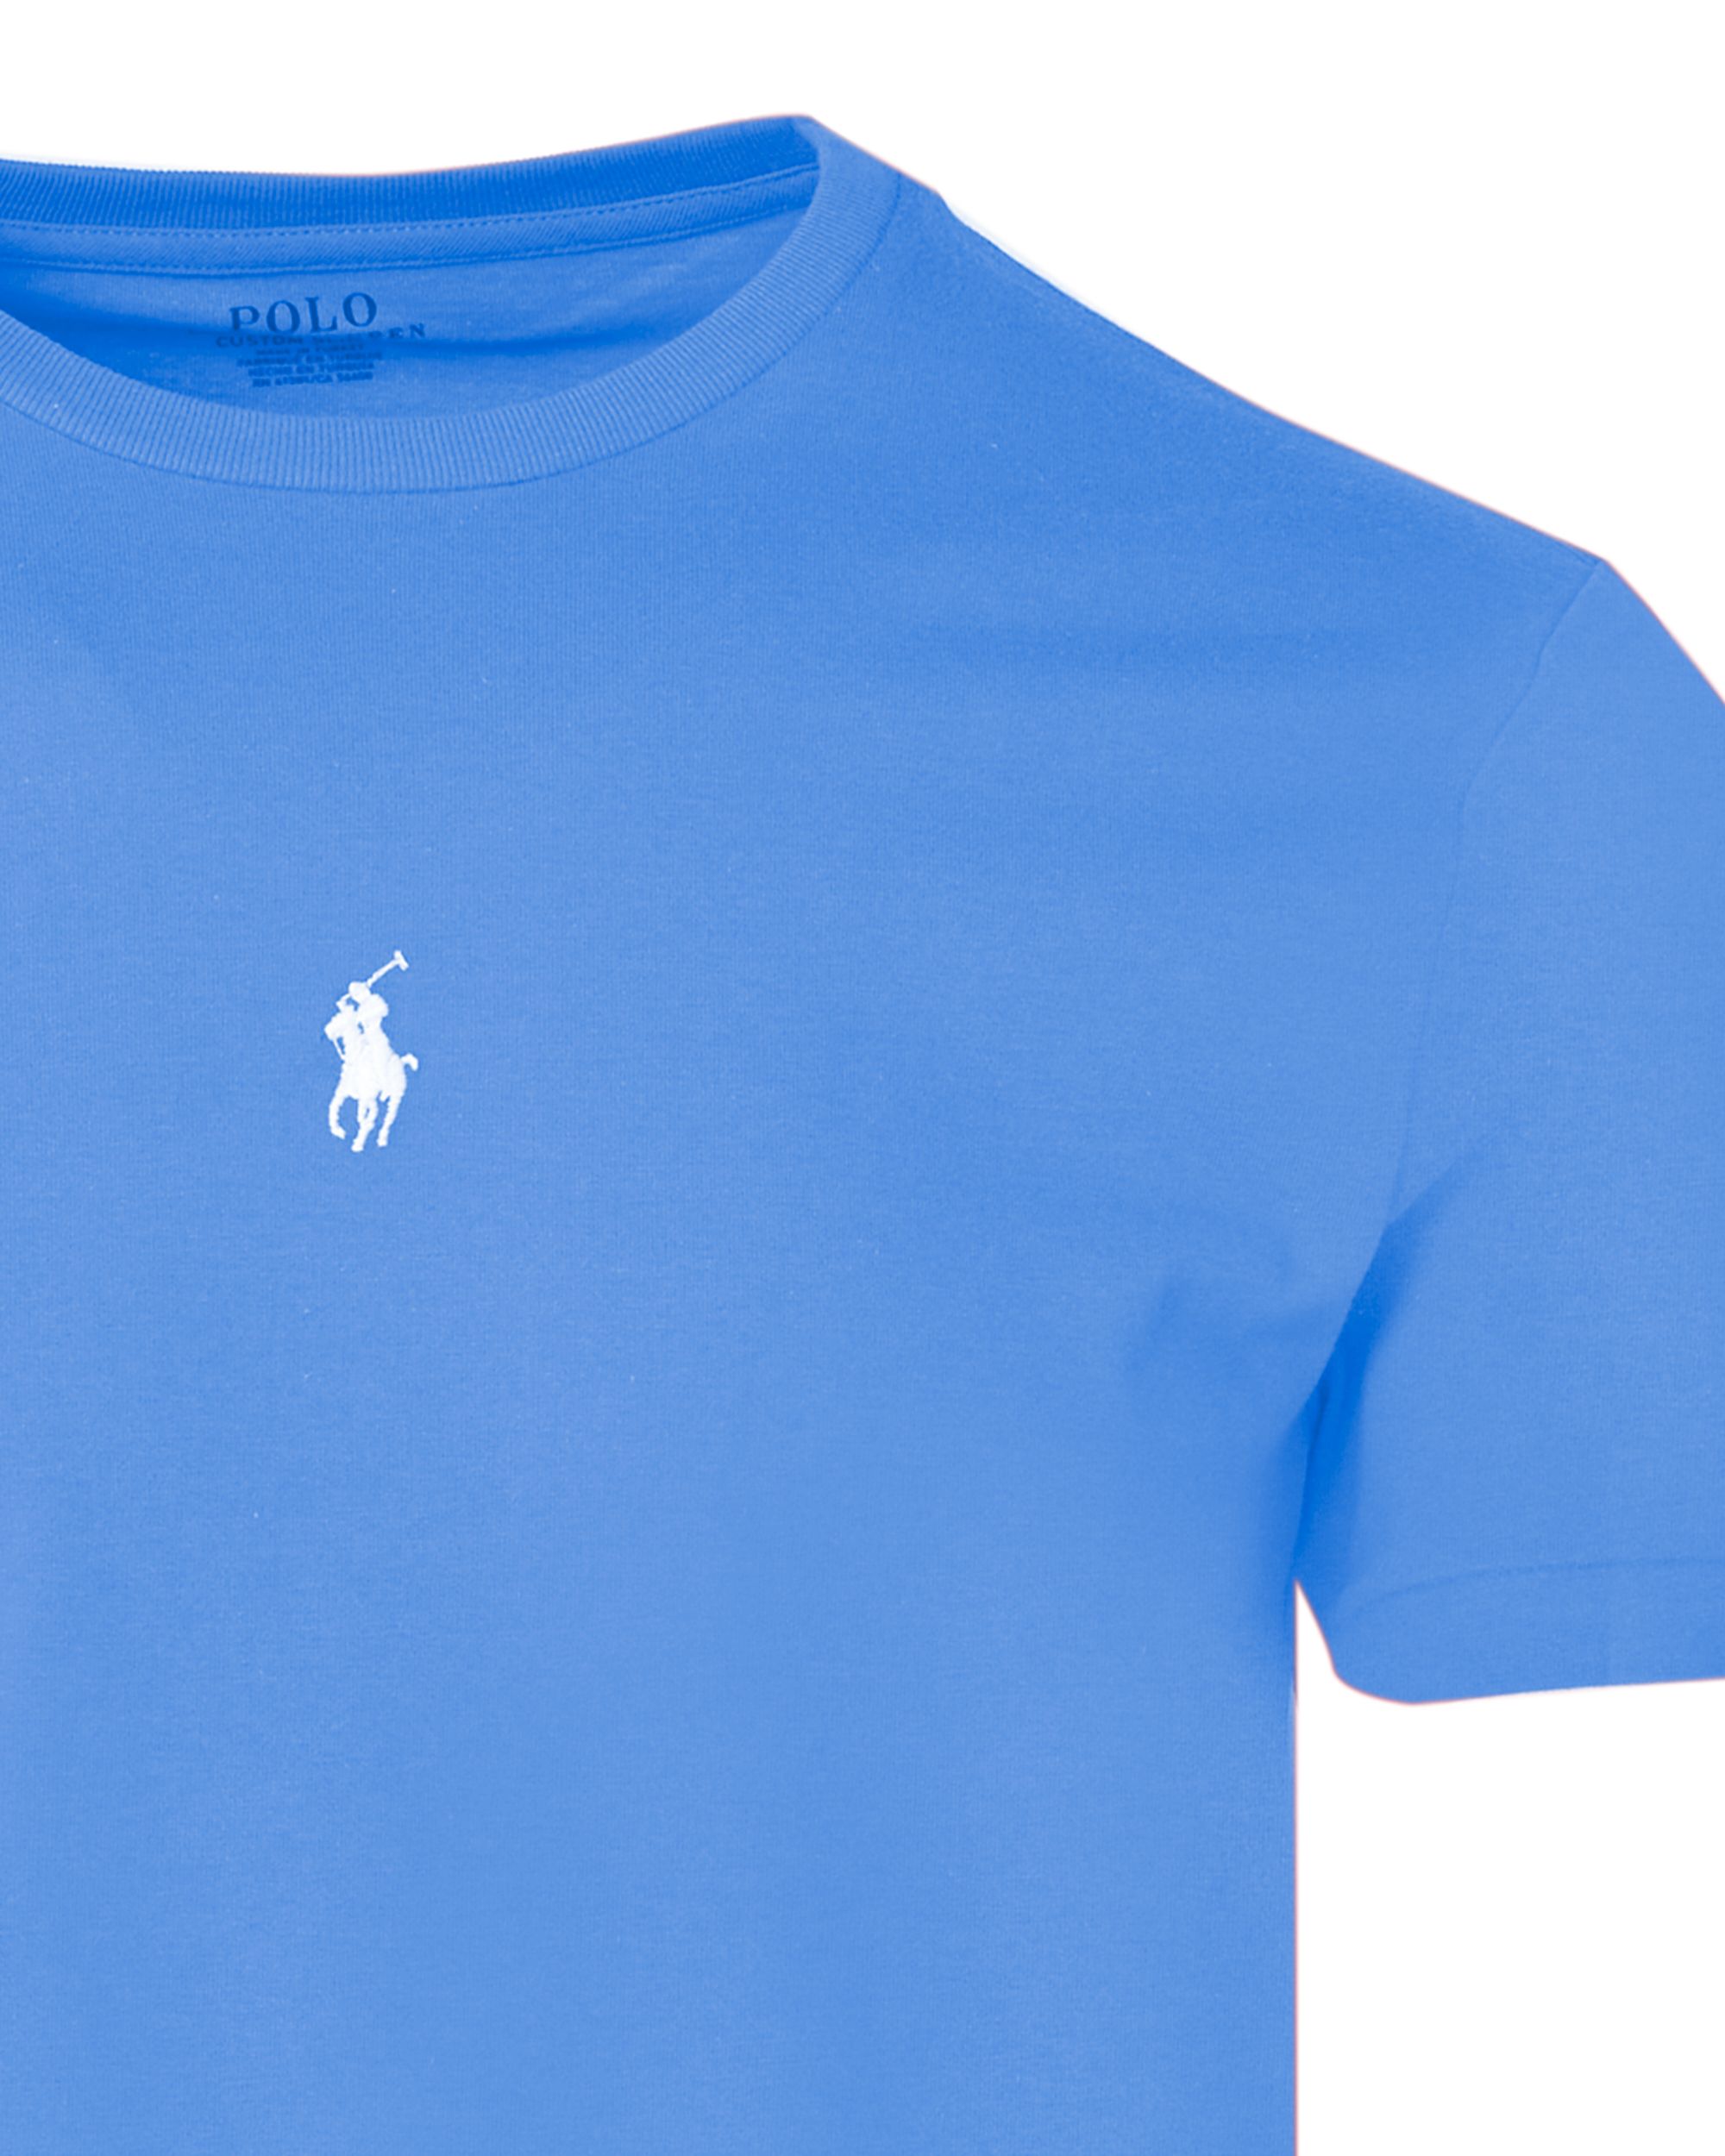 Polo Ralph Lauren T-shirt KM Blauw 083472-001-L